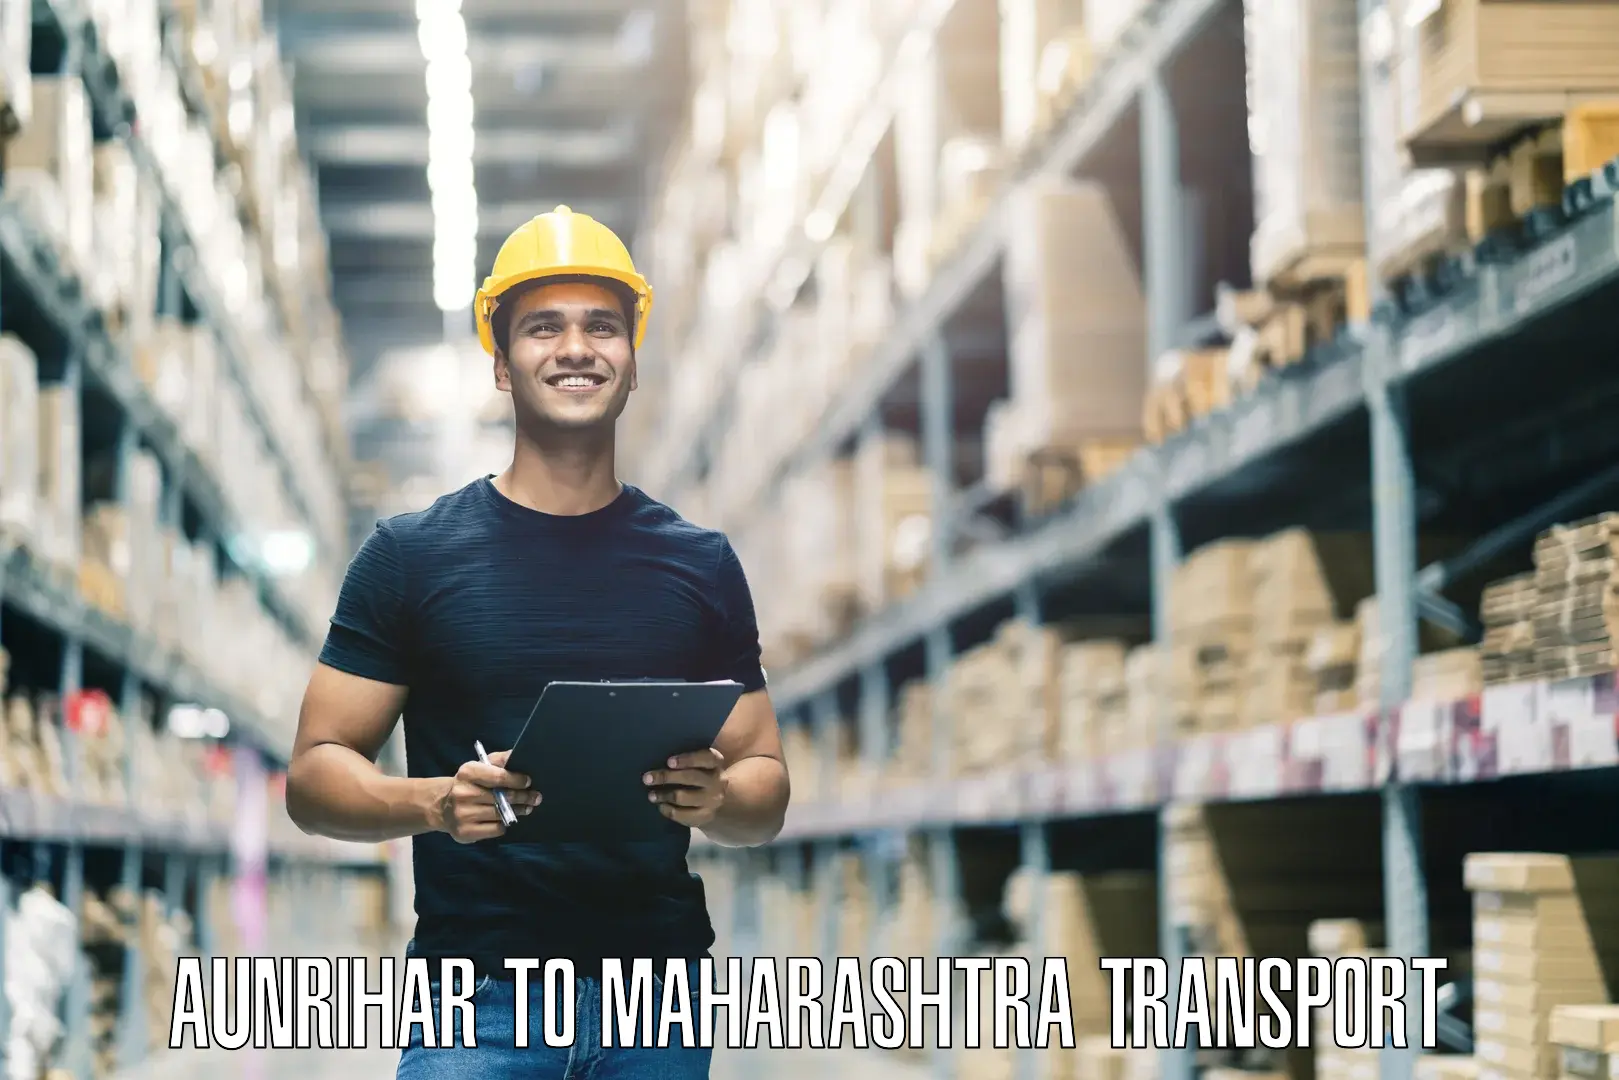 India truck logistics services Aunrihar to Mahabaleshwar